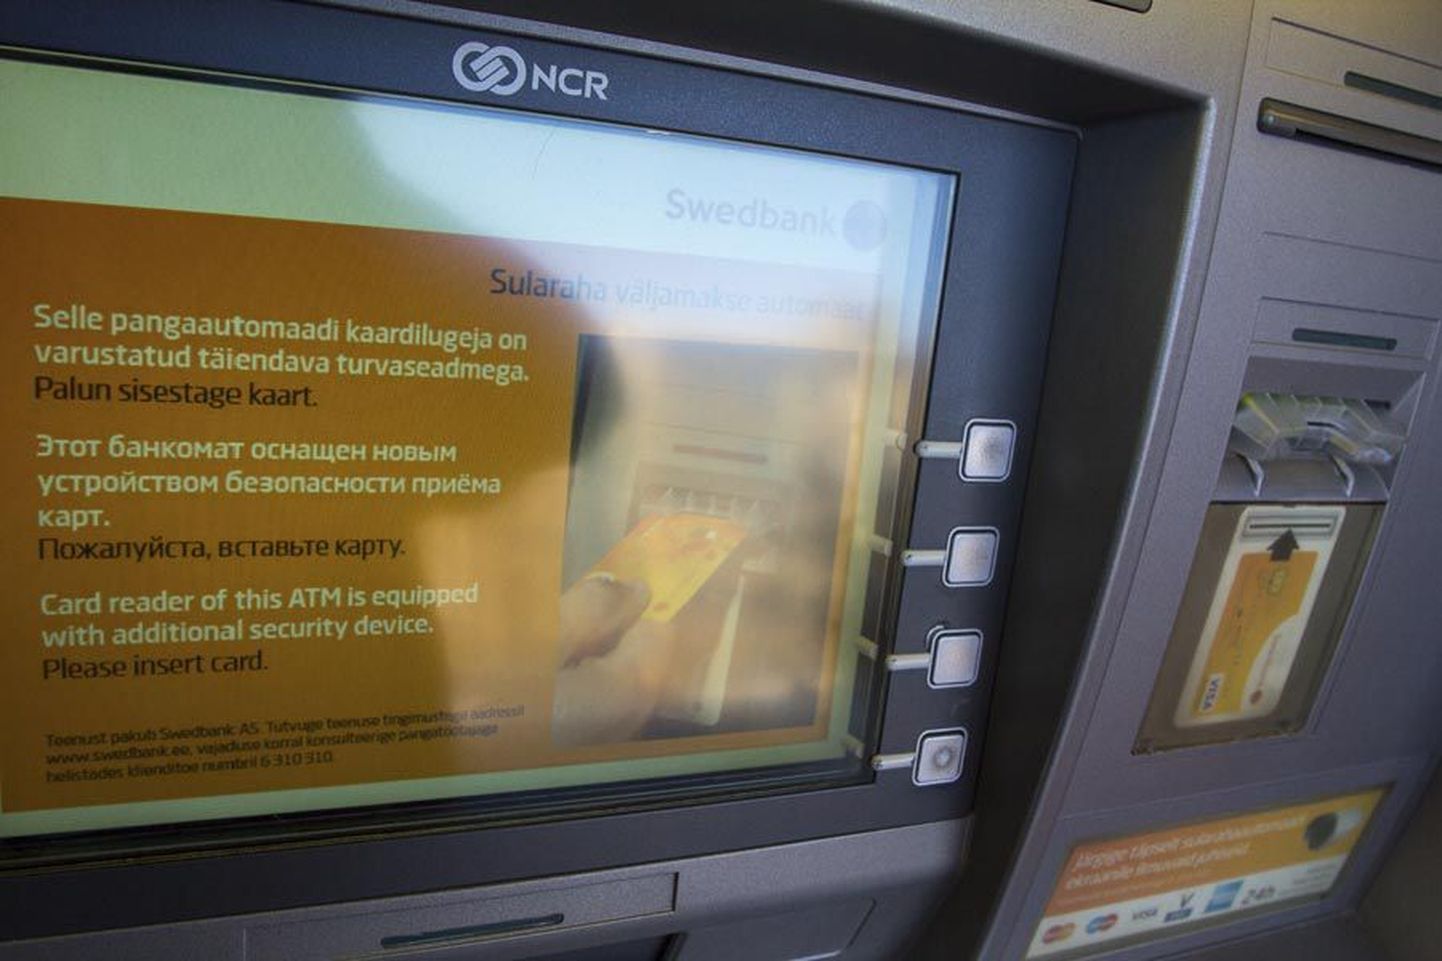 Kõigi Swedbanki sularahaautomaatide kaardilugejad on saanud uue turvaseadme, anti-skimmeri. Niisuguse muudatuse läbi teinud aparaadi ekraanil seisab selle kohta ka kiri.